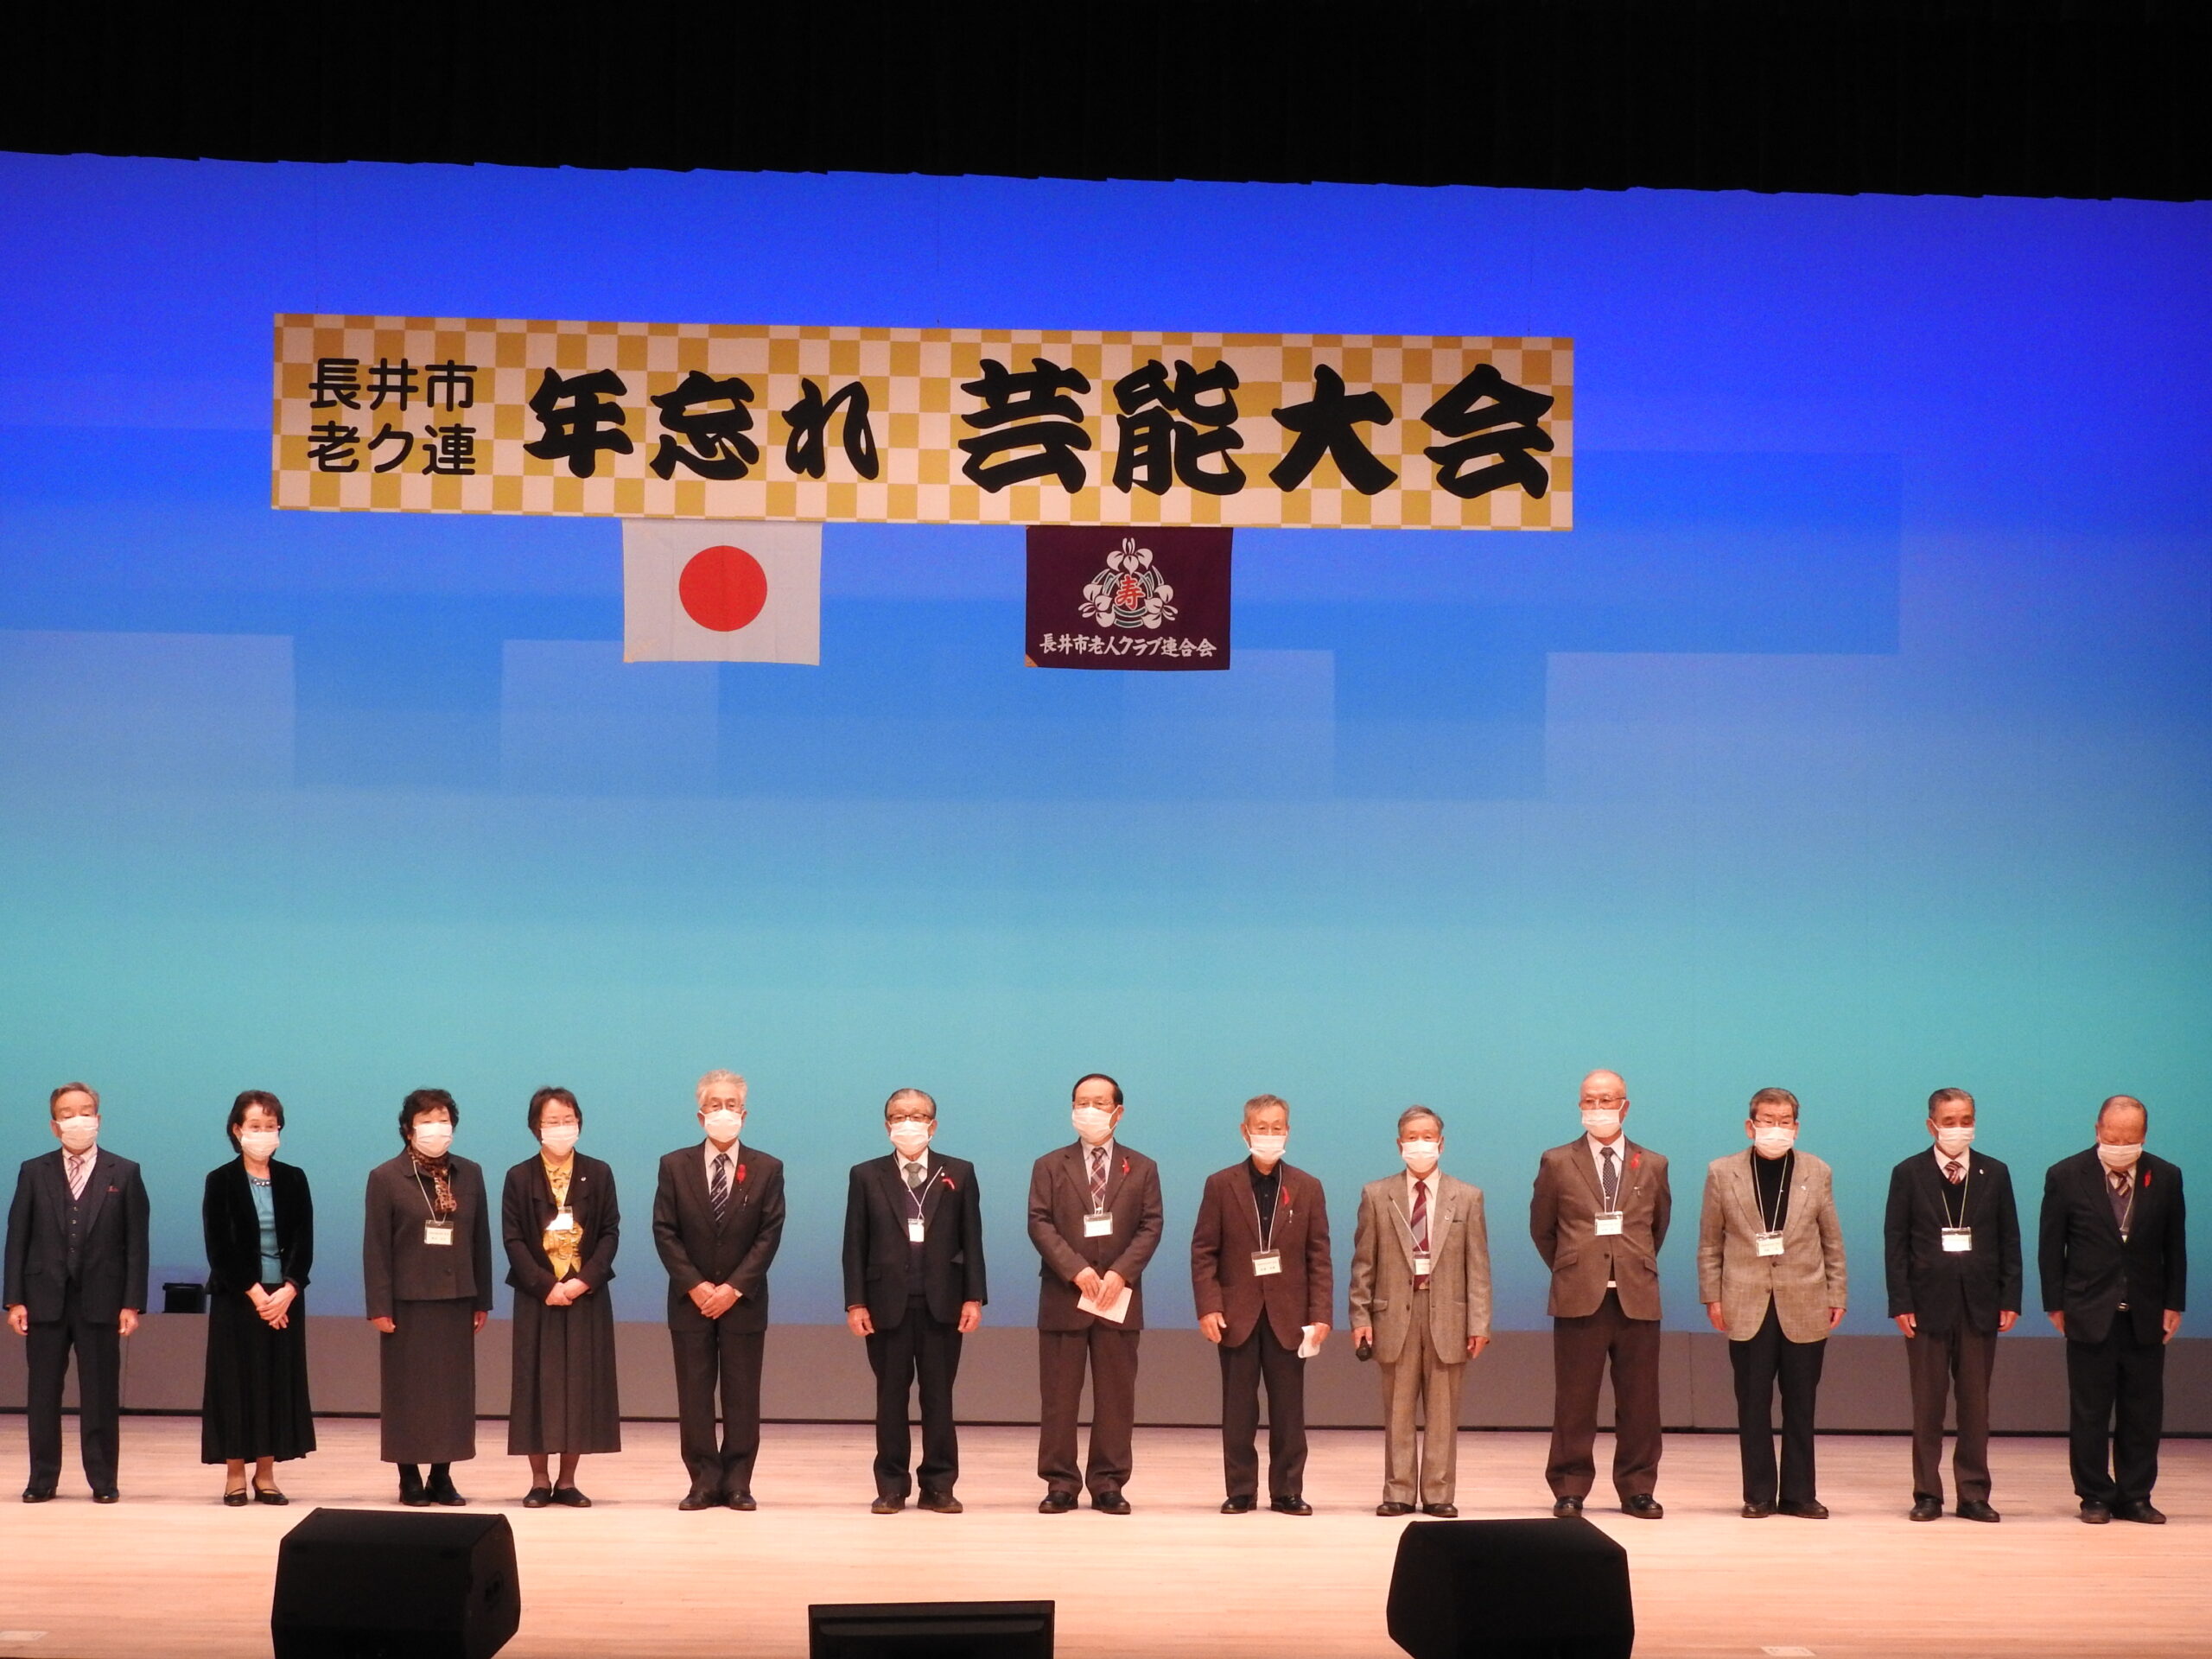 第42回長井市老人クラブ連合会年忘れ芸能発表会を開催しました。